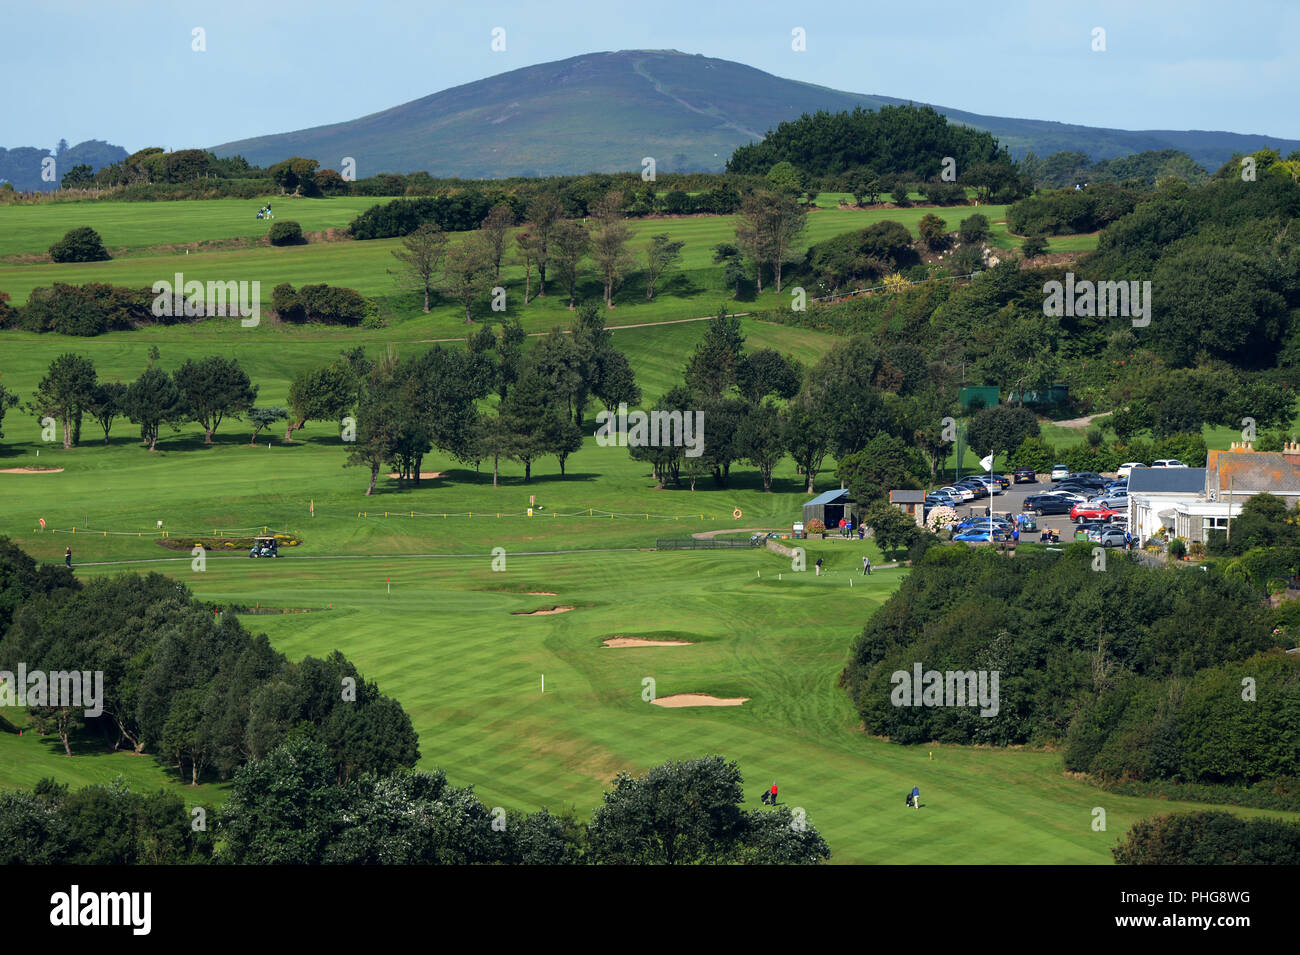 Panoramica di Langland Bay Golf Club, un campo da golf a 18 buche in una zona di straordinaria bellezza naturale che si affaccia su Langland Bay vicino a Swansea, Wales, Regno Unito Foto Stock